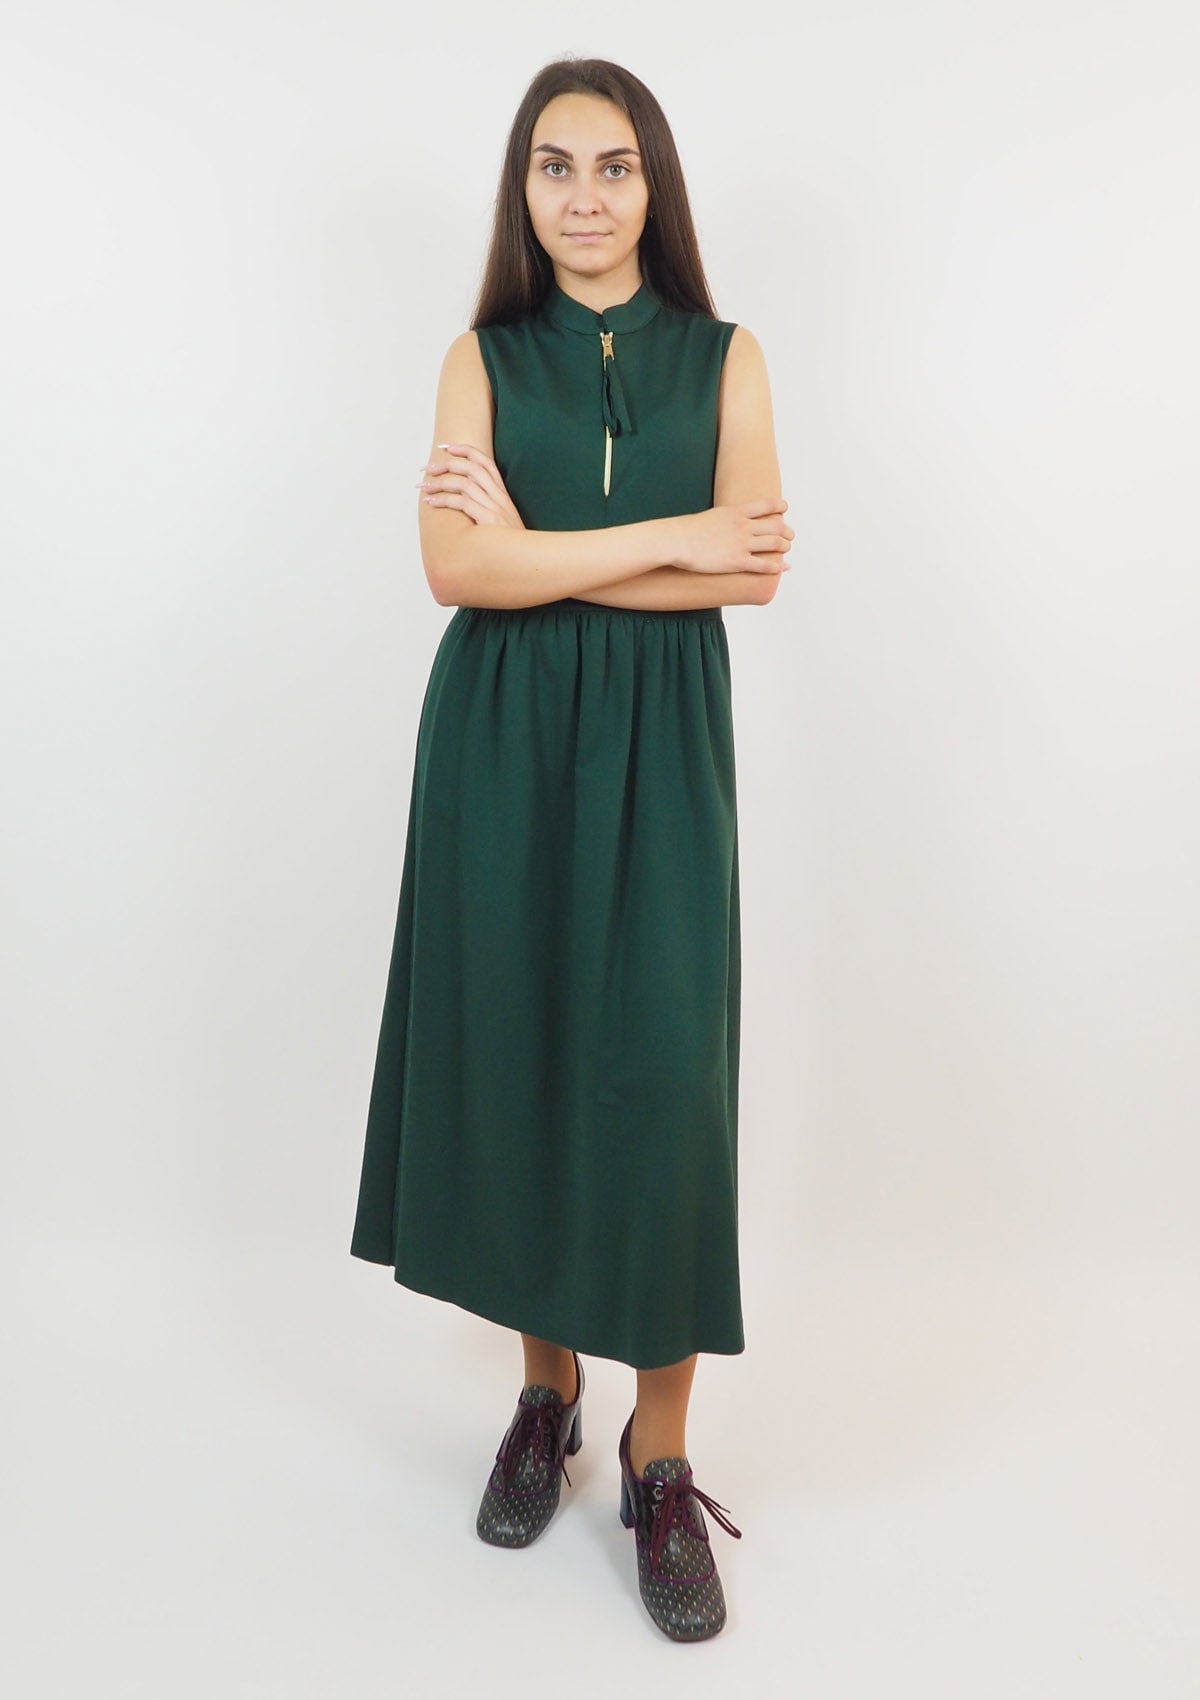 Damen Kleid aus Viskose in Grün - Abito Damen Kleid SHIRTAPORTER 